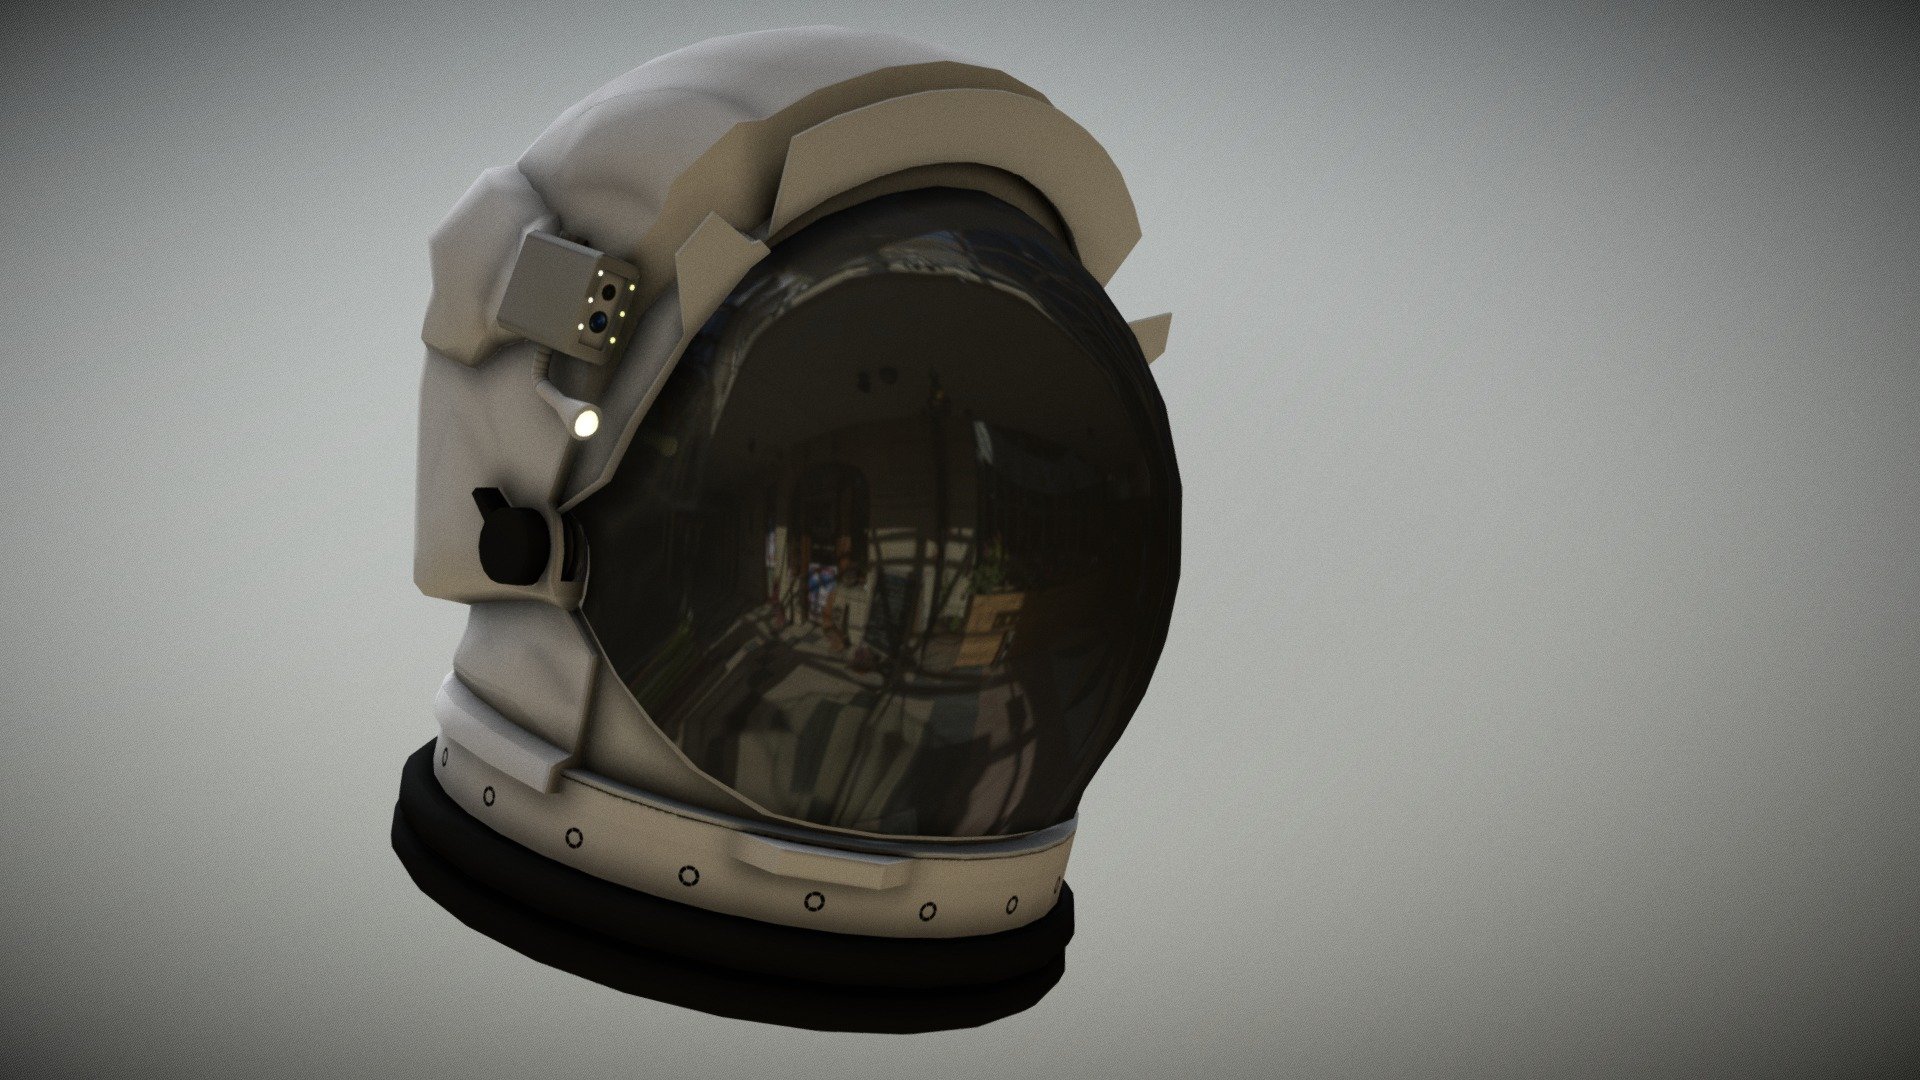 astronaut space helmet